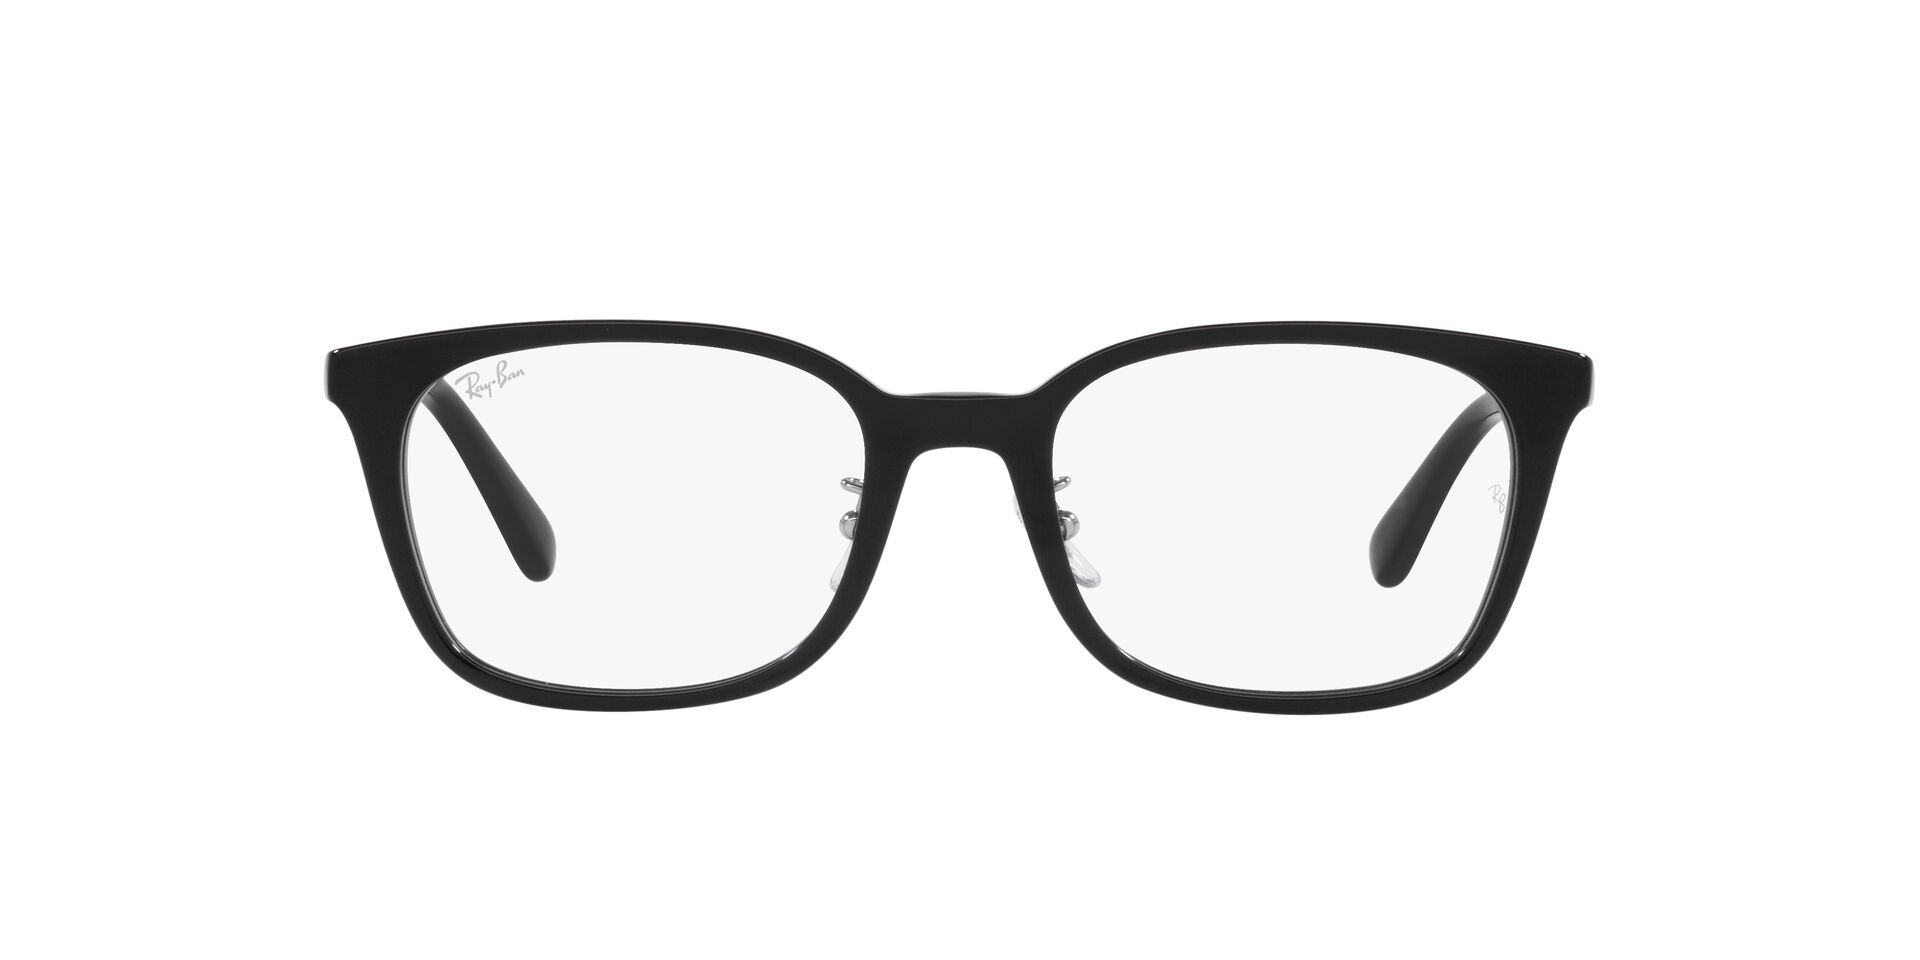 Ray Ban l 現代經典方框眼鏡 典雅黑